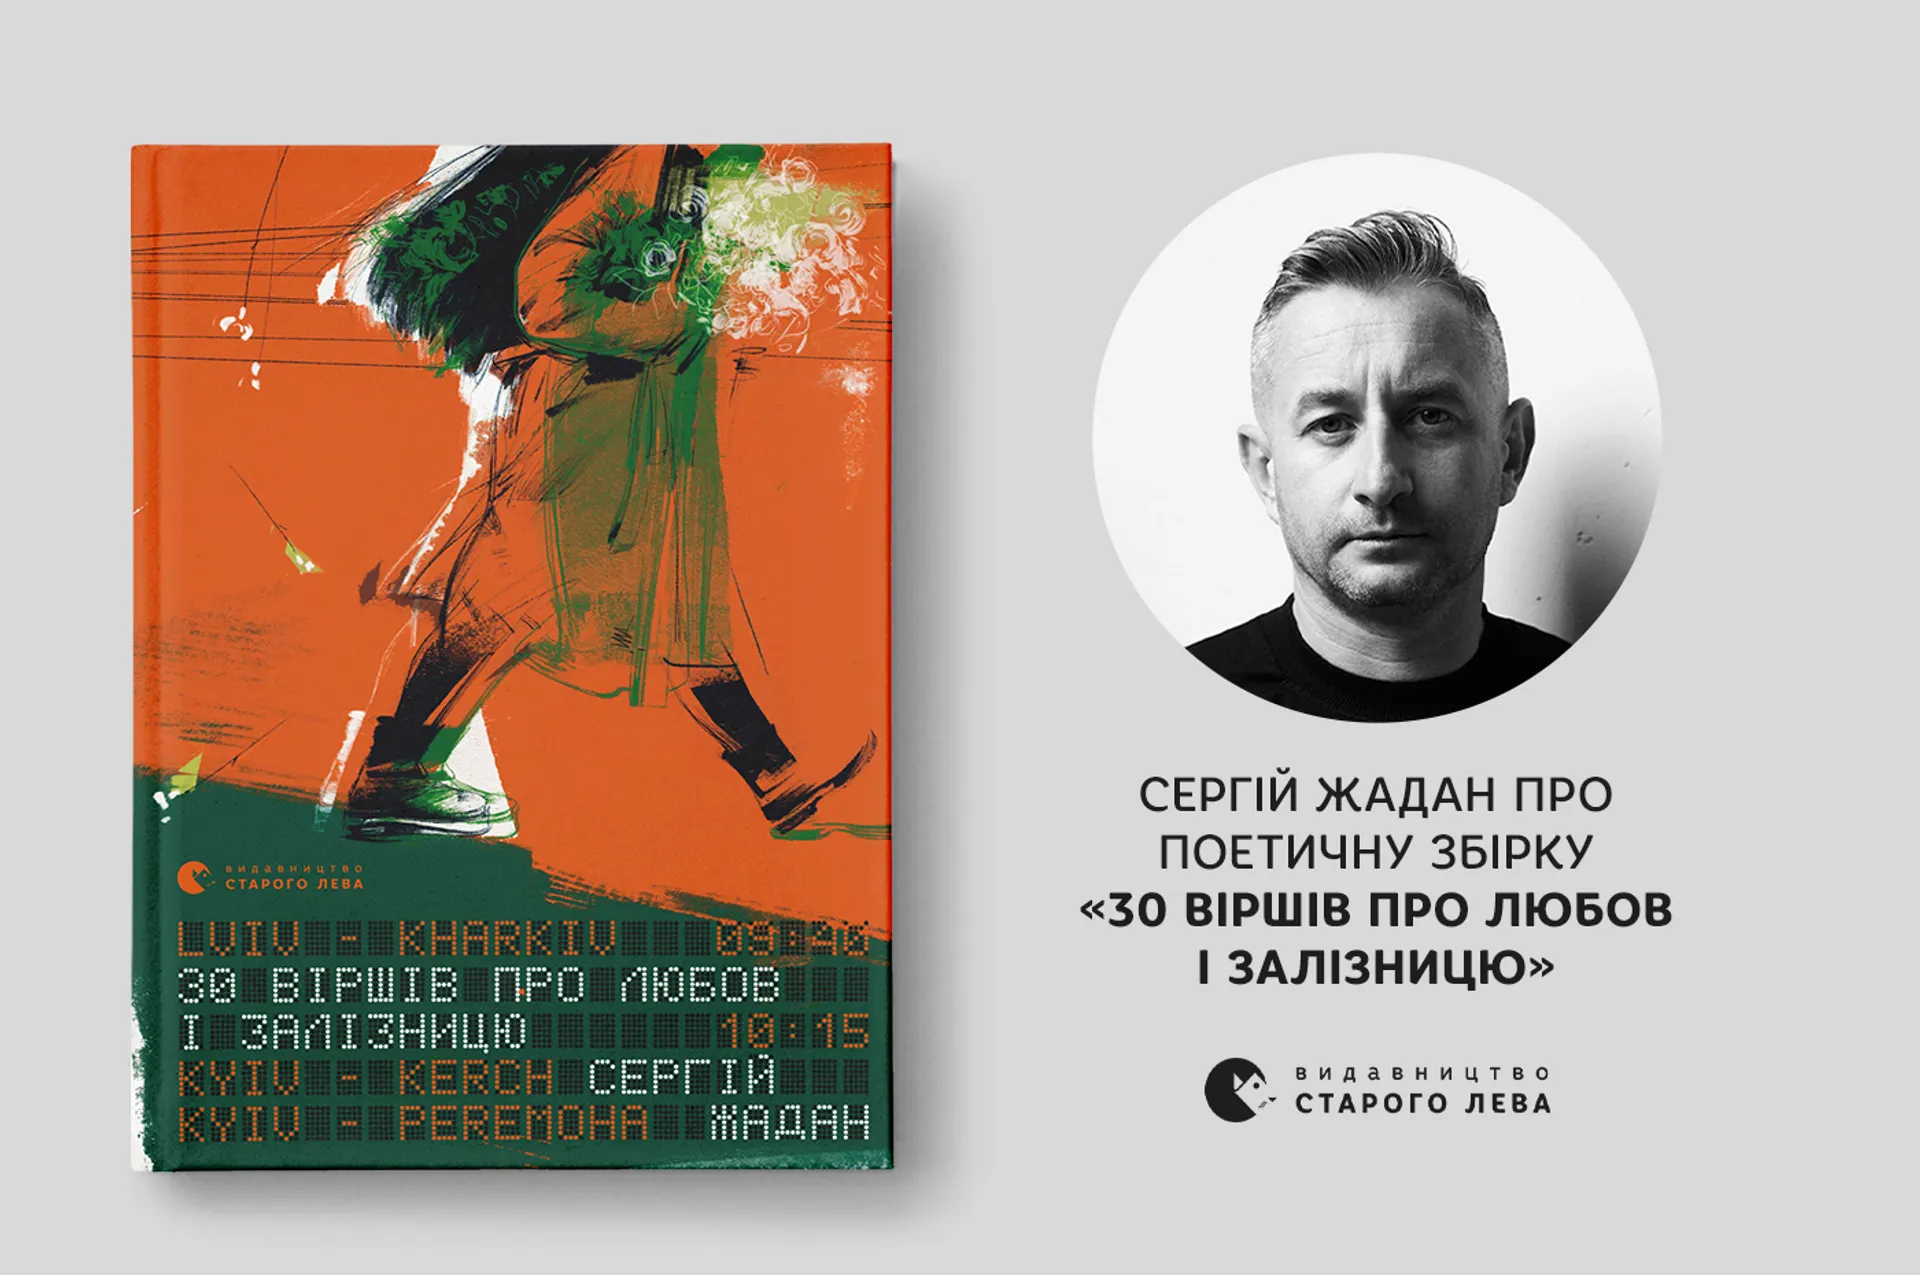 Сергій Жадан про збірку «30 віршів про любов і залізницю»